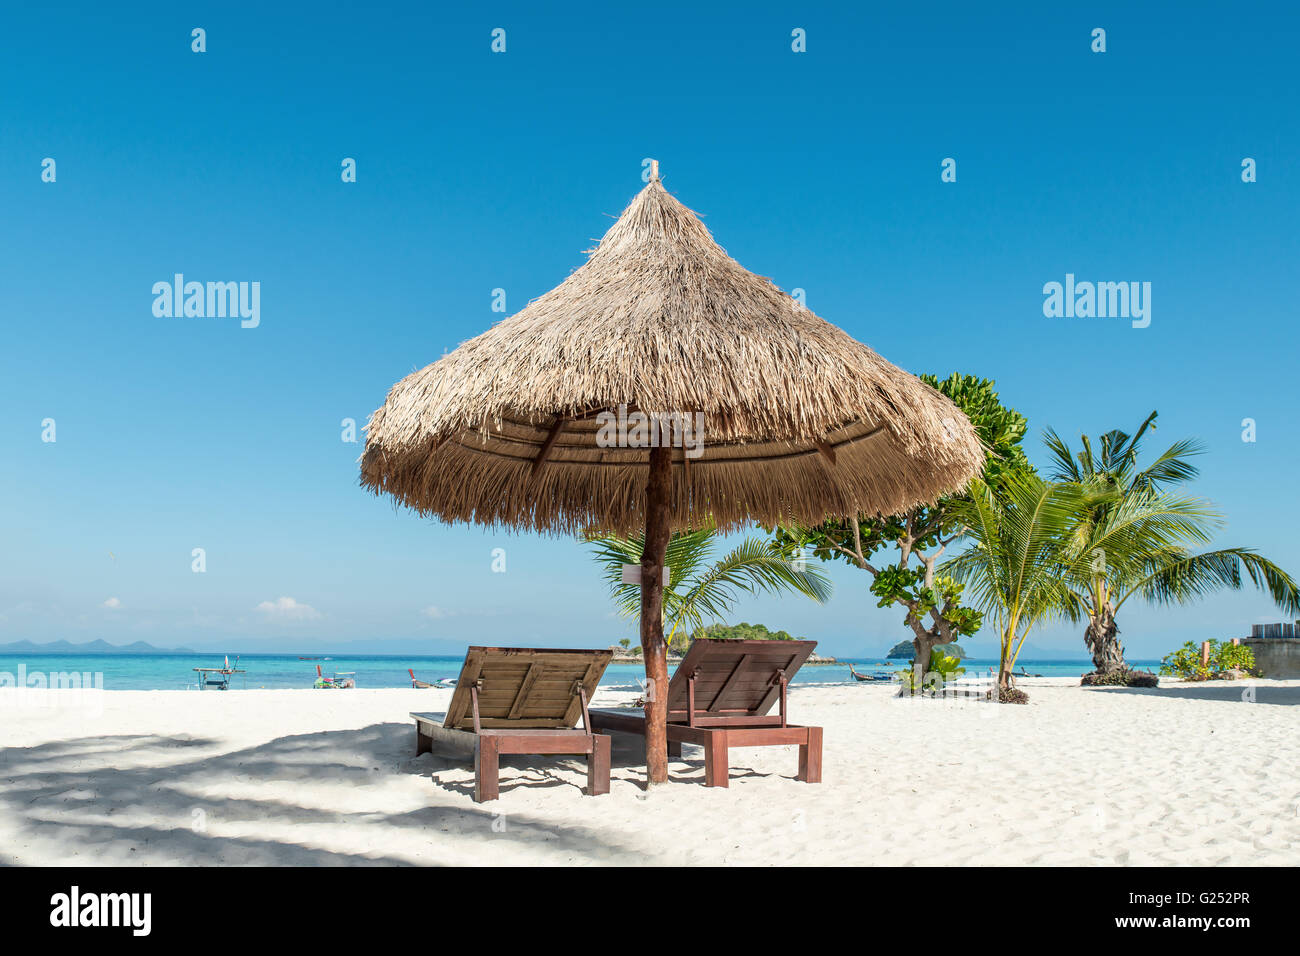 Verano, Viajes, vacaciones y días festivos - Concepto de sillas y sombrillas de playa en la isla de Phuket, Tailandia Foto de stock